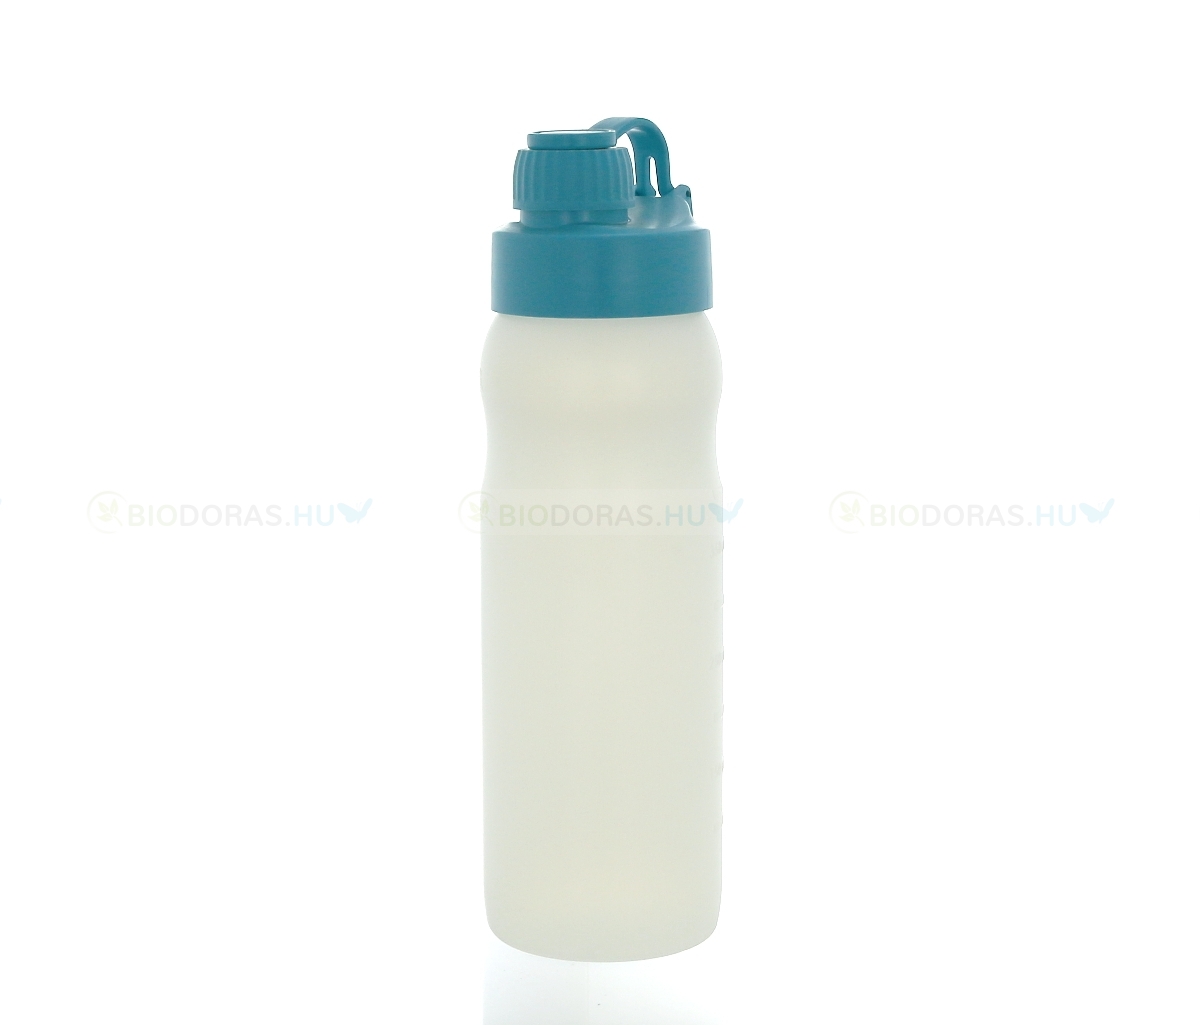 BIODORA Bioműanyag kulacs (sportpalack) visszazárható kupakkal, fehér-türkizkék színben - 500 ml